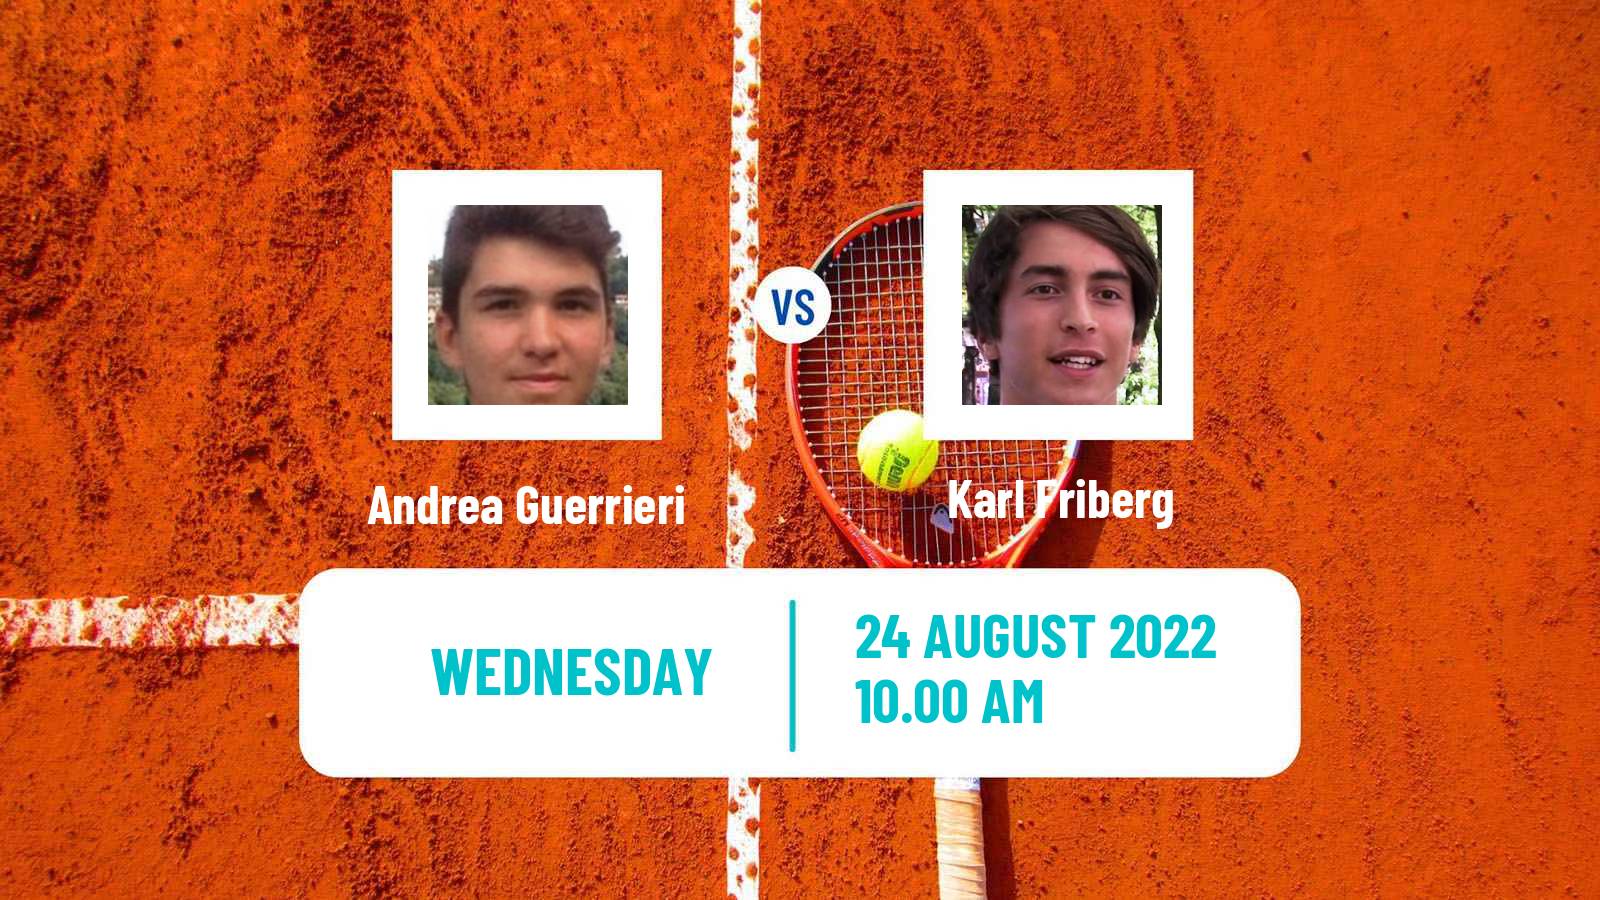 Tennis ITF Tournaments Andrea Guerrieri - Karl Friberg